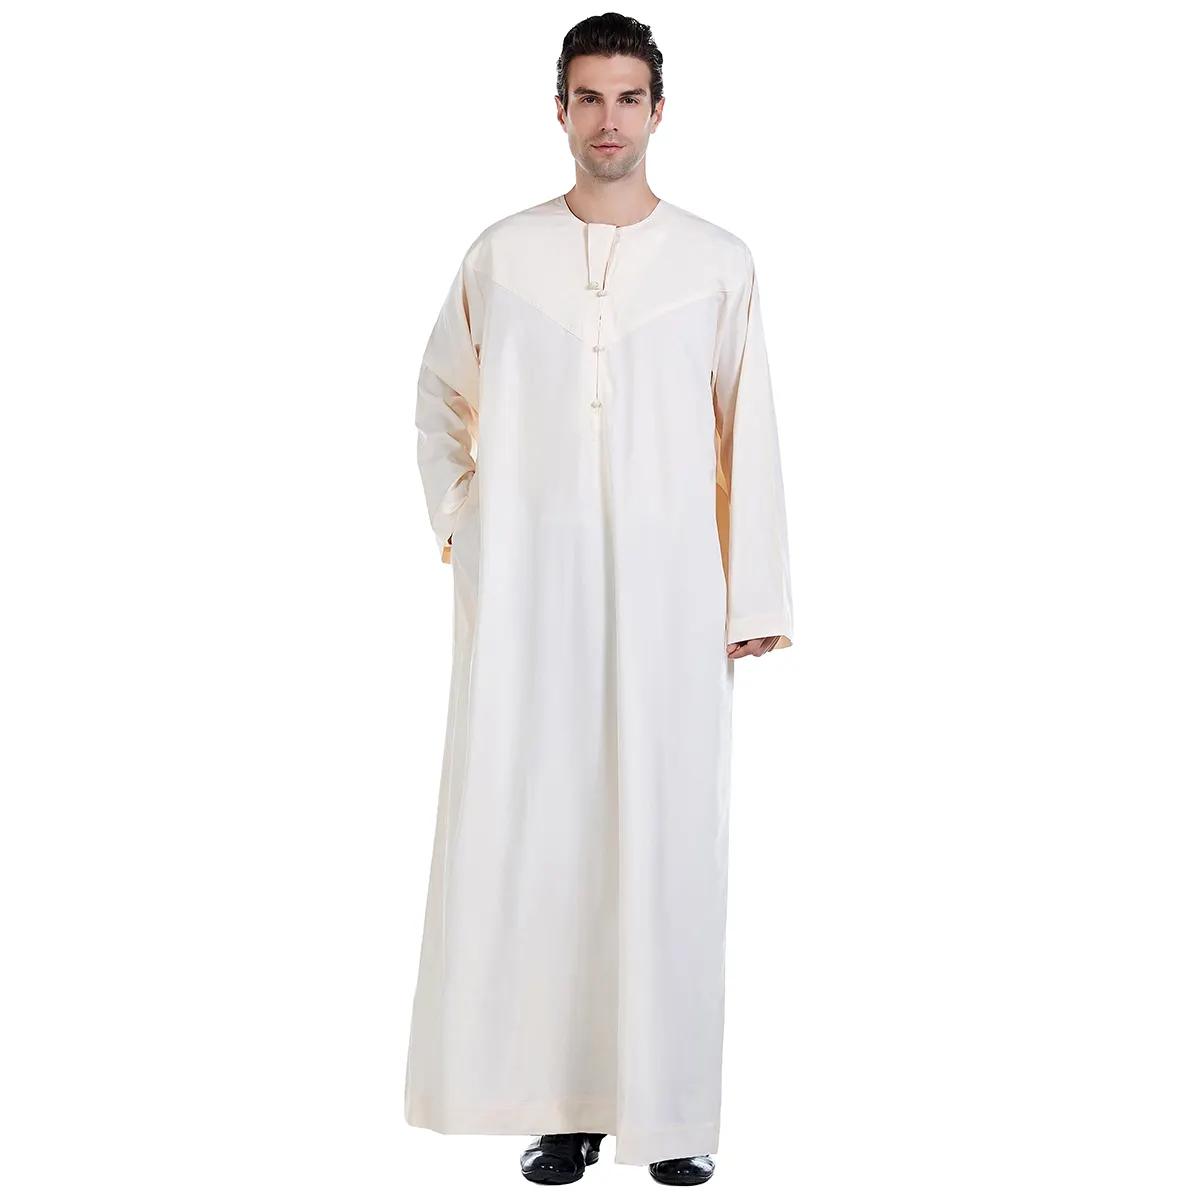 เสื้อผ้าอิสลามอาหรับ Jubba ผู้ชายมุสลิม Thobe เสื้อคลุม Muslimah ชุดโอมานซาอุดิอาระเบียอิสลาม